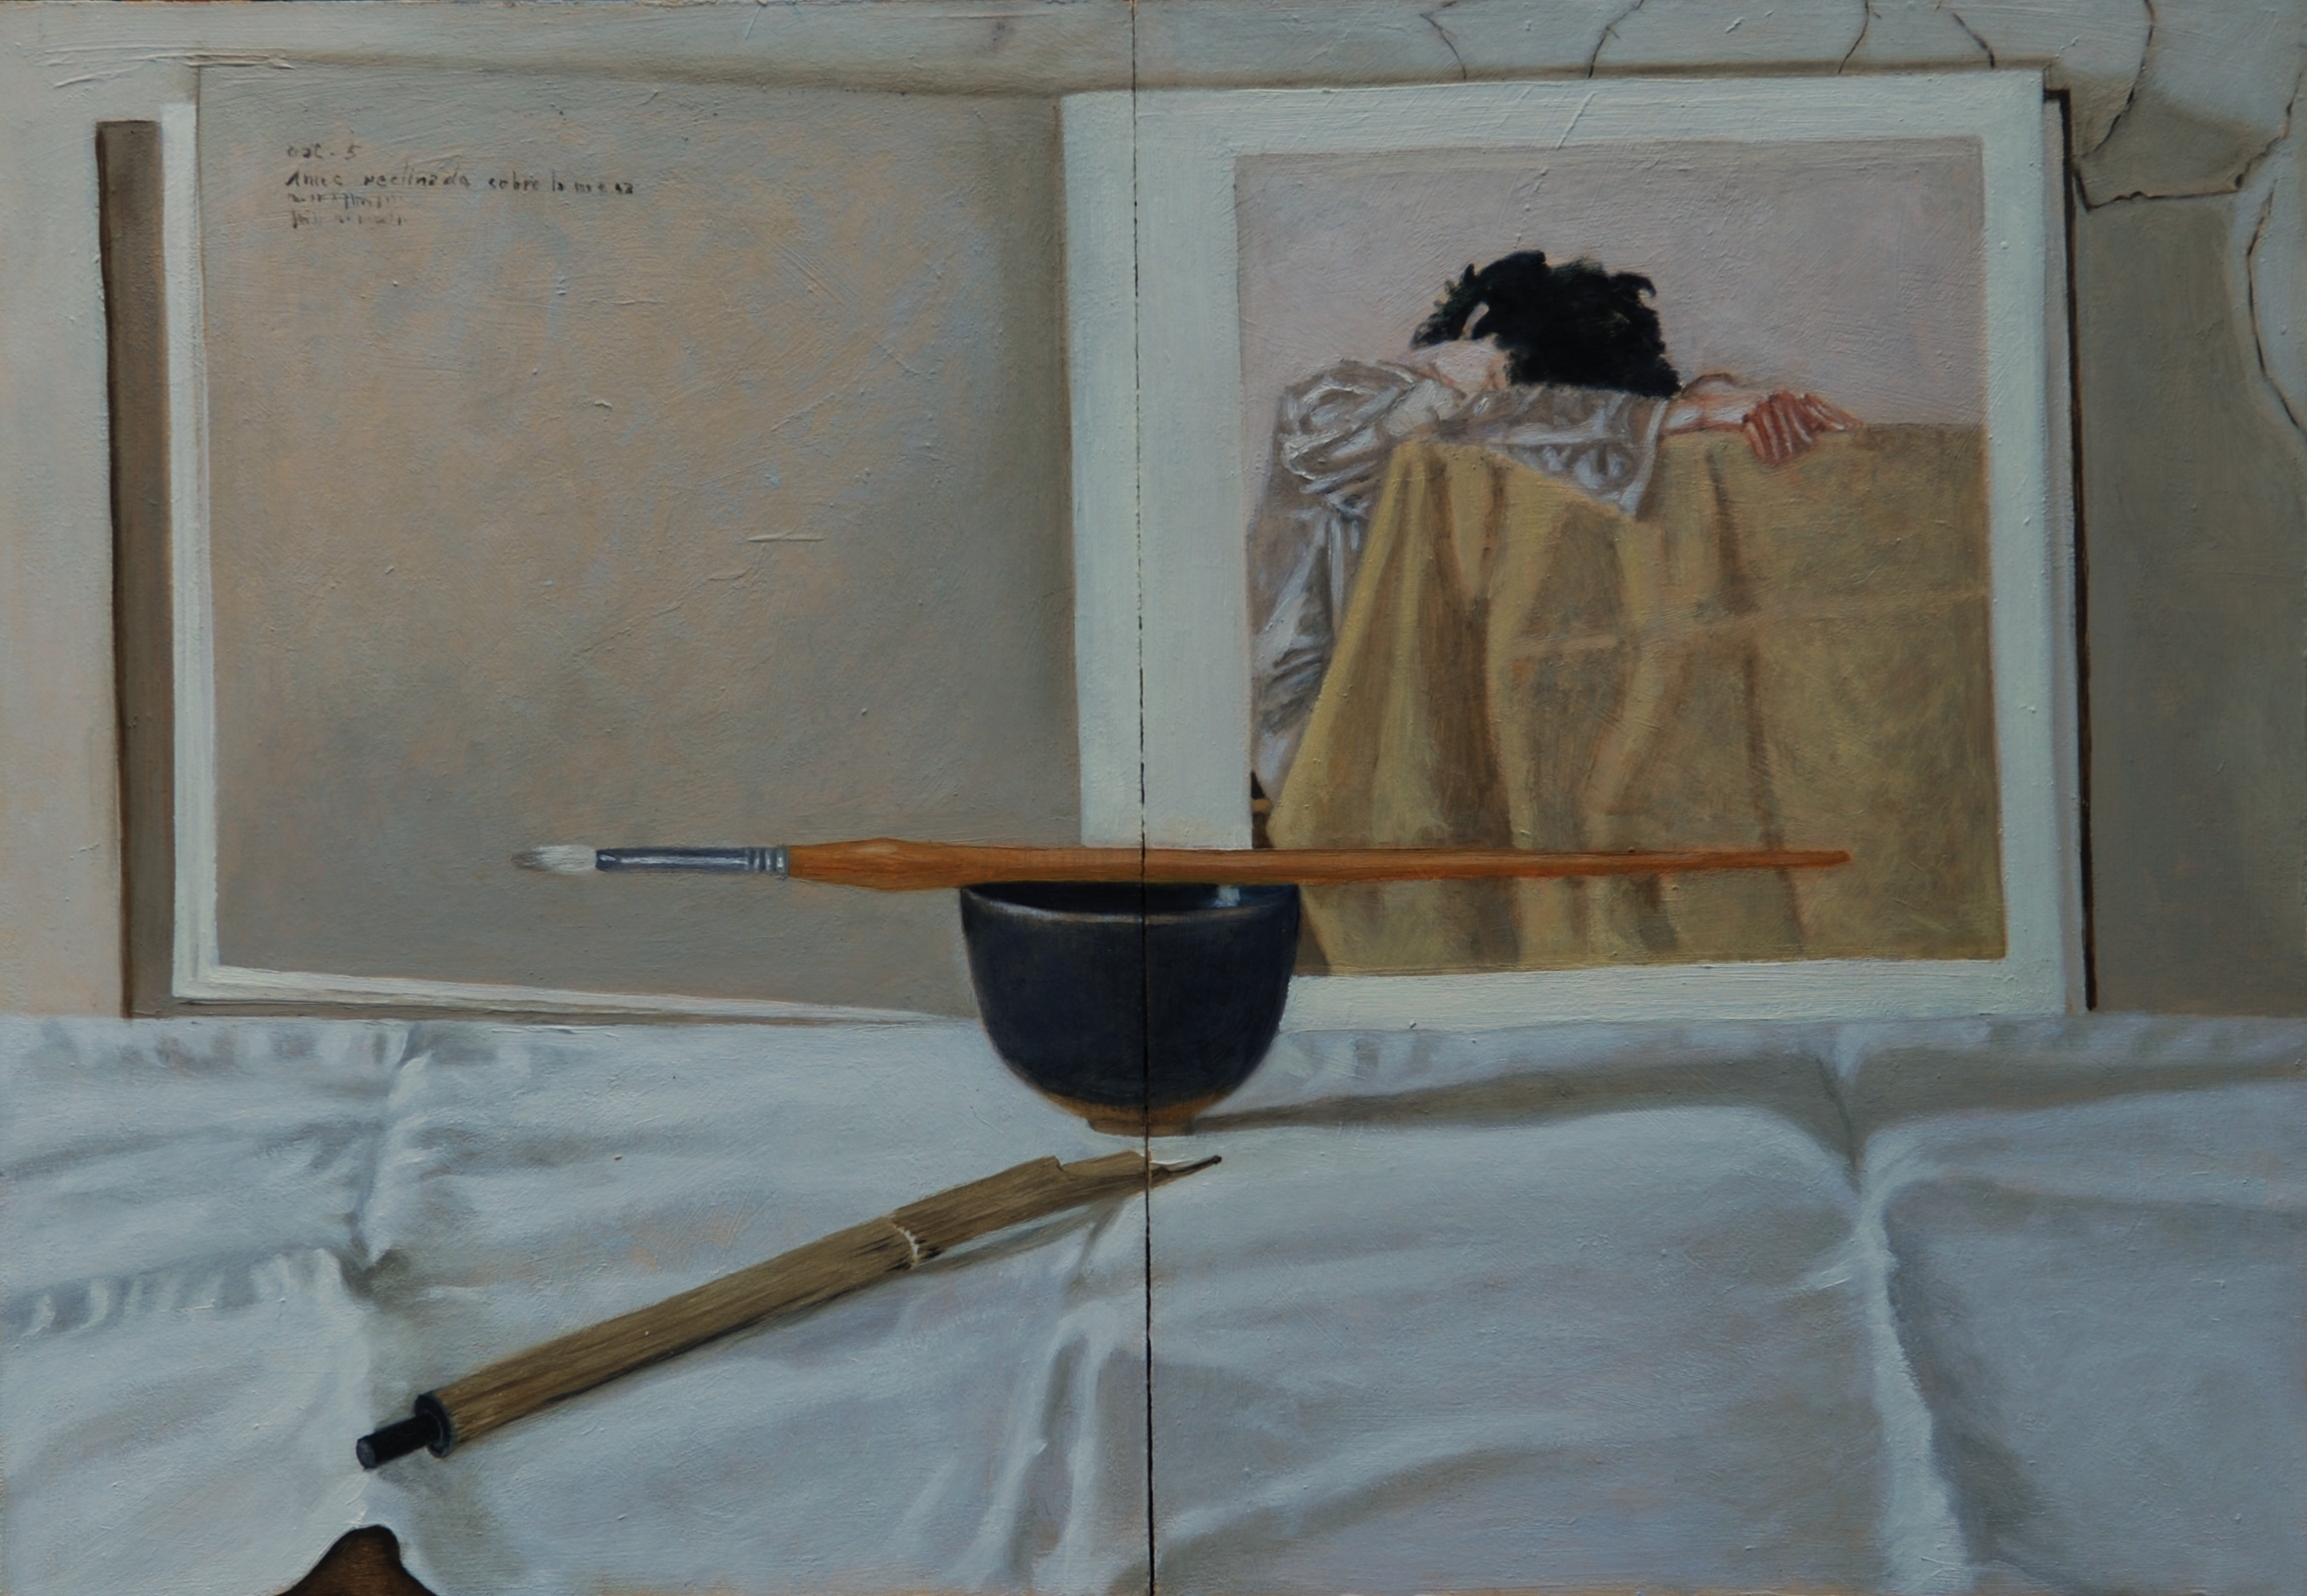 B 9) Trittico I, chiuso (Omaggio ad Arikha), 2011, olio su tavola, 55,3x38